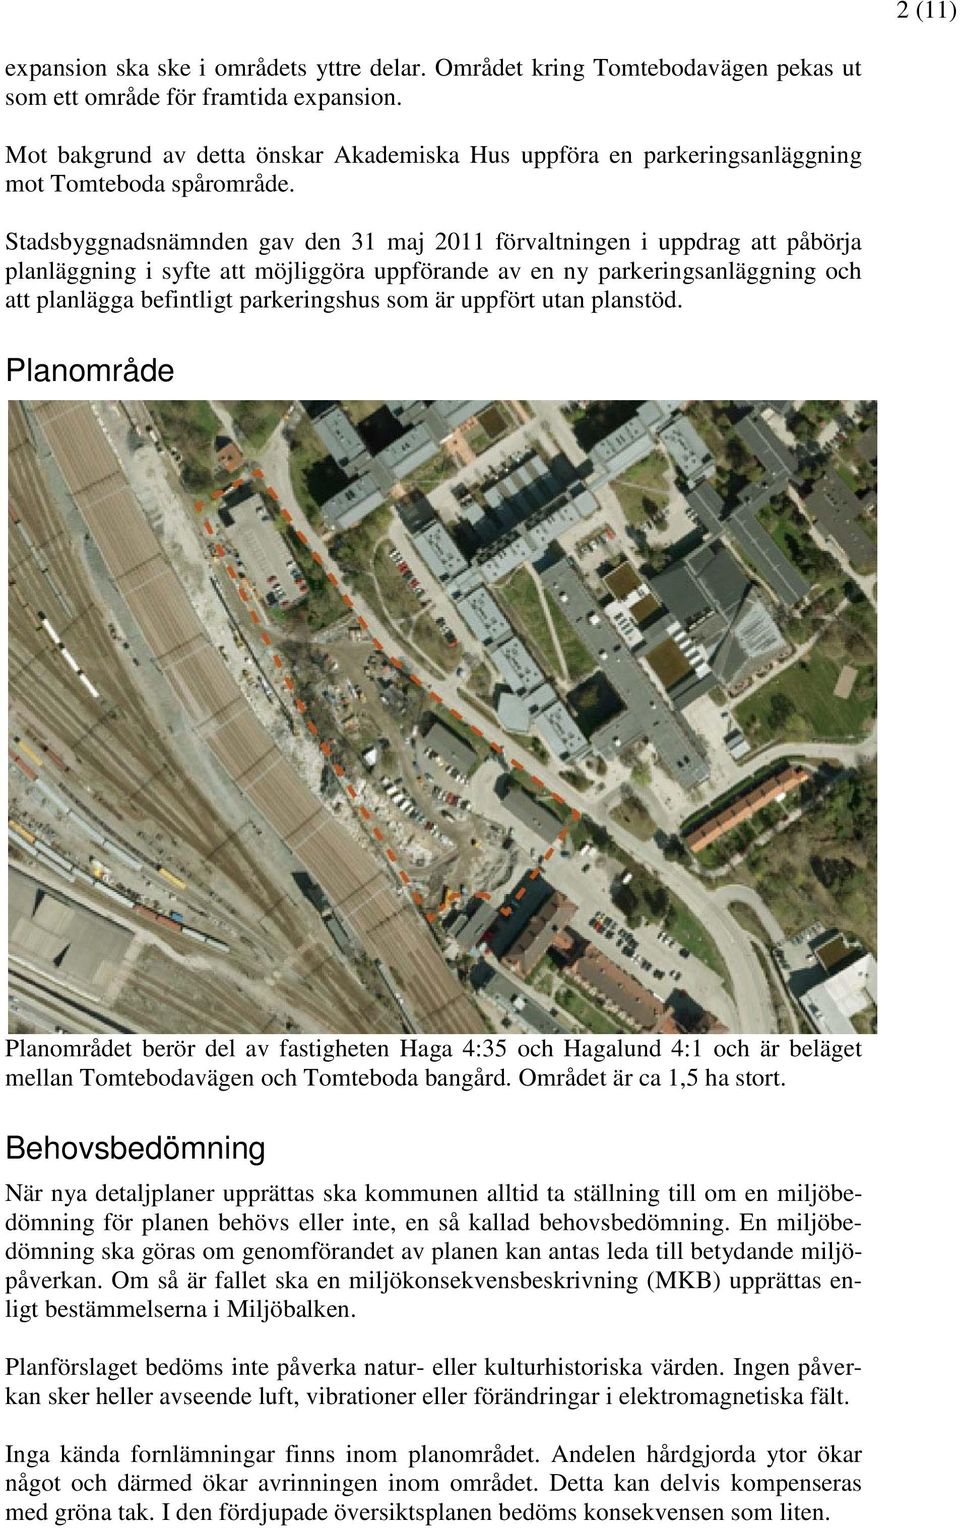 Stadsbyggnadsnämnden gav den 31 maj 2011 förvaltningen i uppdrag att påbörja planläggning i syfte att möjliggöra uppförande av en ny parkeringsanläggning och att planlägga befintligt parkeringshus